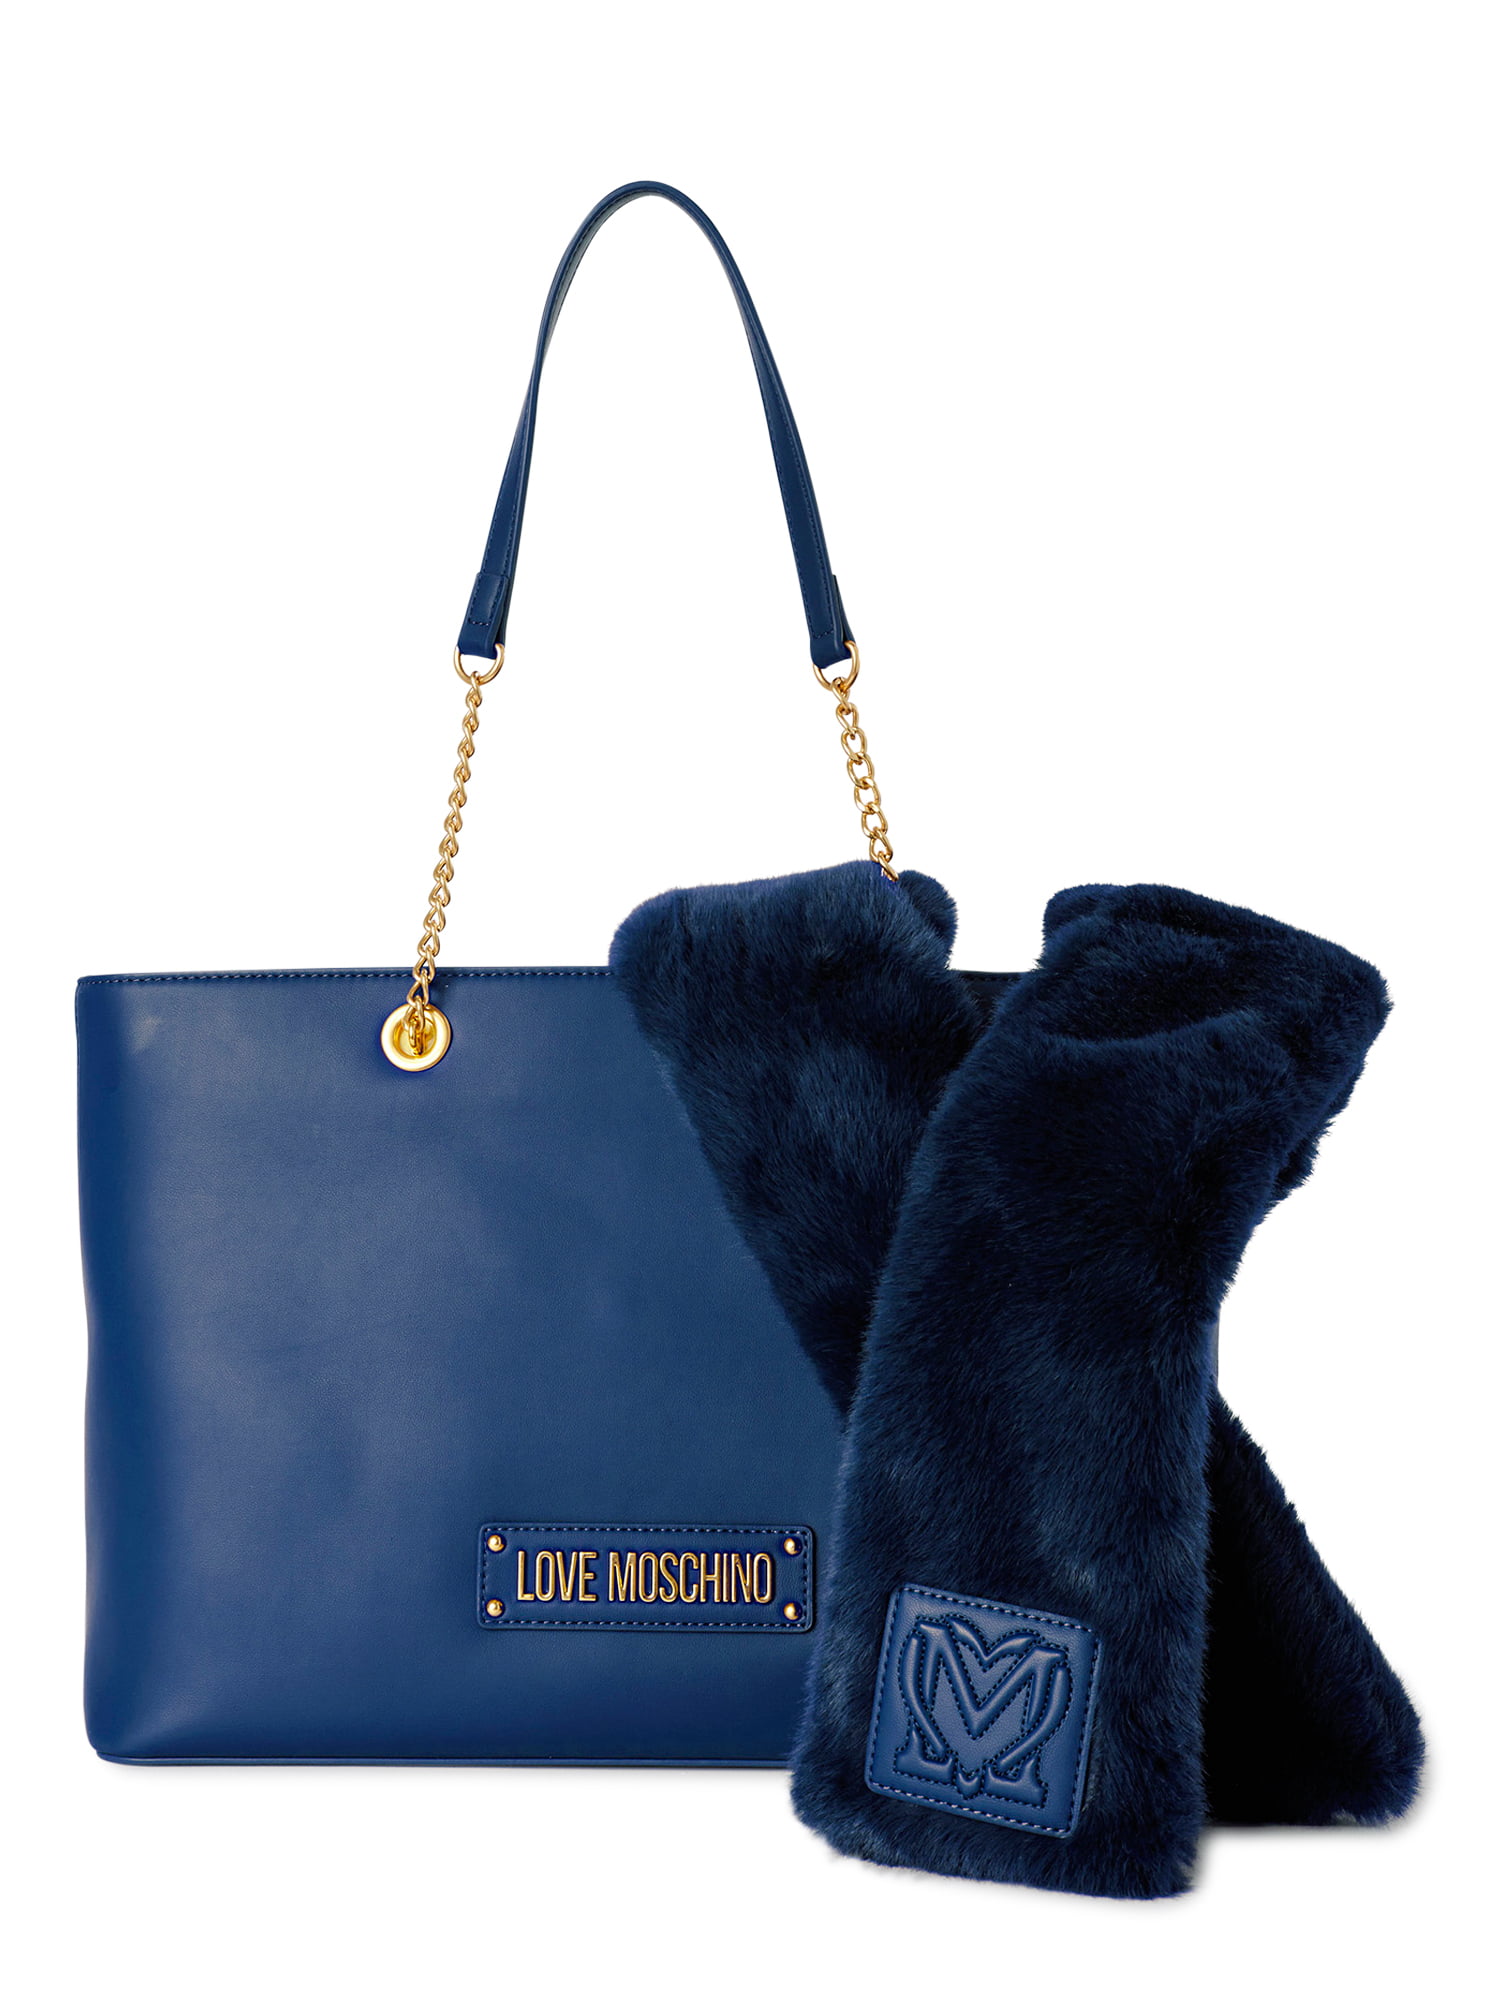 Love Moschino - Tote bag for Woman - Black - JC4261PP0HKL0000 | FRMODA.COM